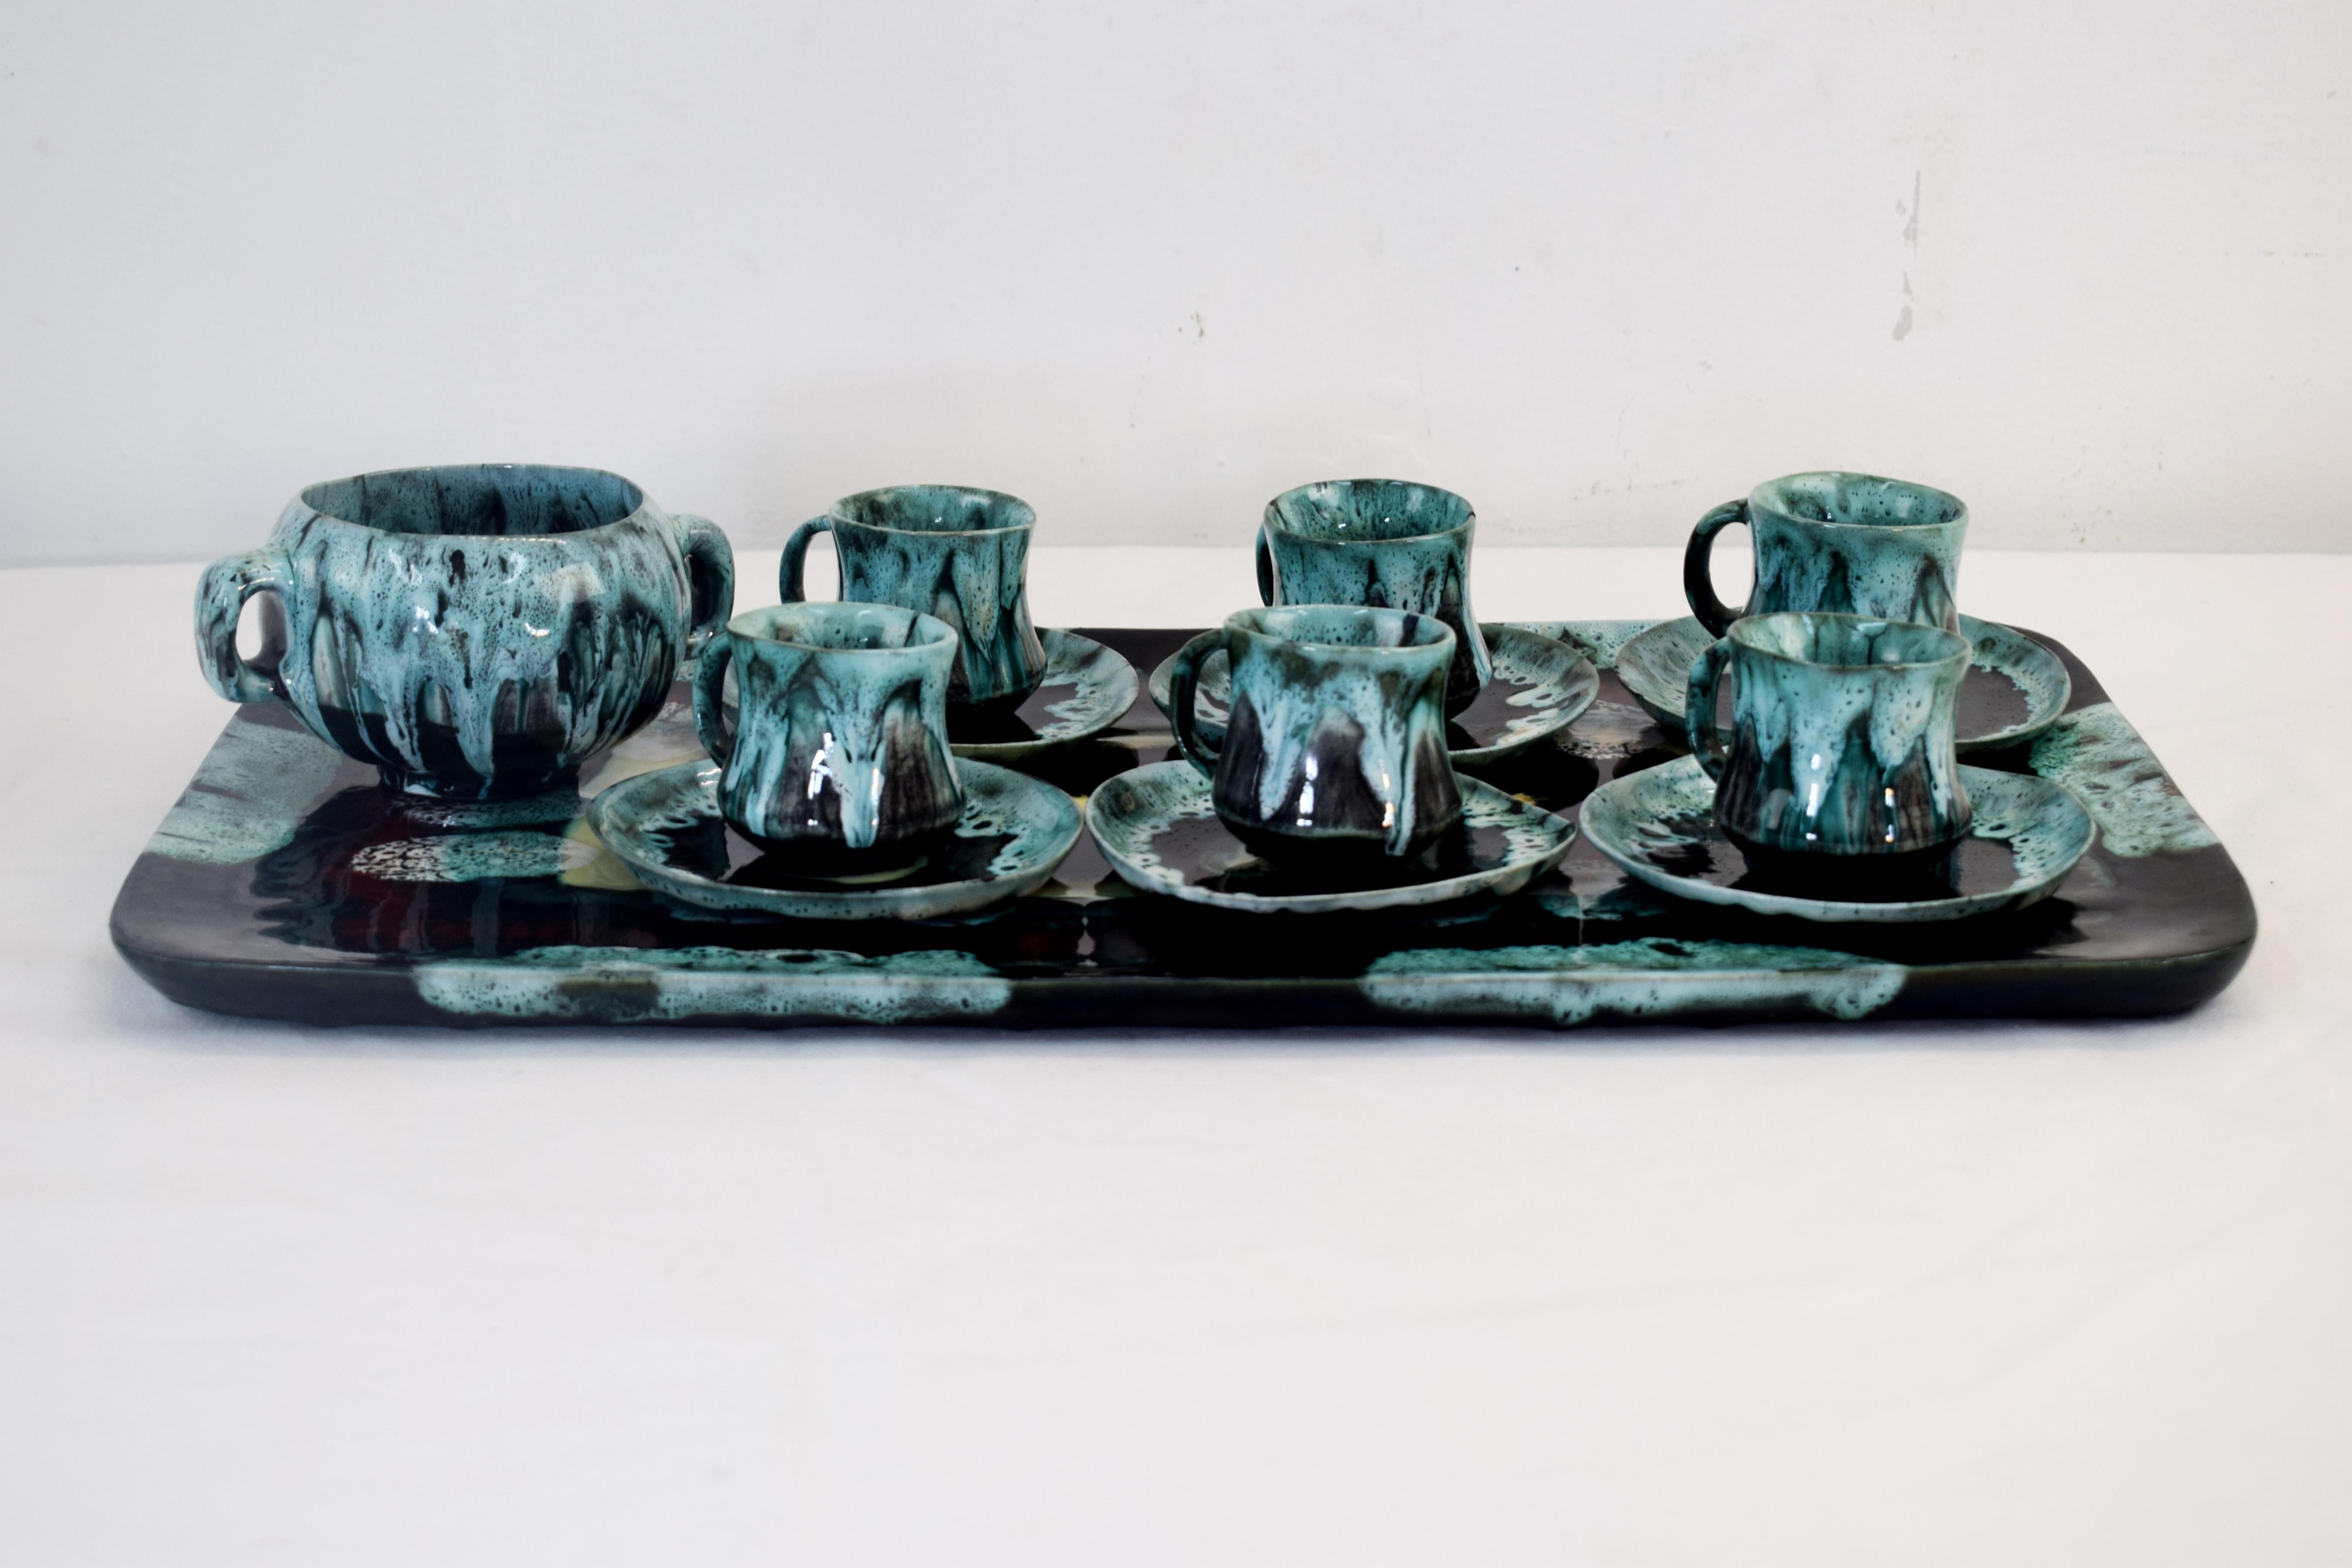 Italian glazed ceramic coffee set from Flora, 1960s.
Dimensions
Tray: H=3 cm; W=47 cm; D=27 cm.
Cup: H=5 cm; D=7 cm.
Saucer: H=2 cm; D=11 cm.
Sugar bowl: H=8 cm; D=11 cm.